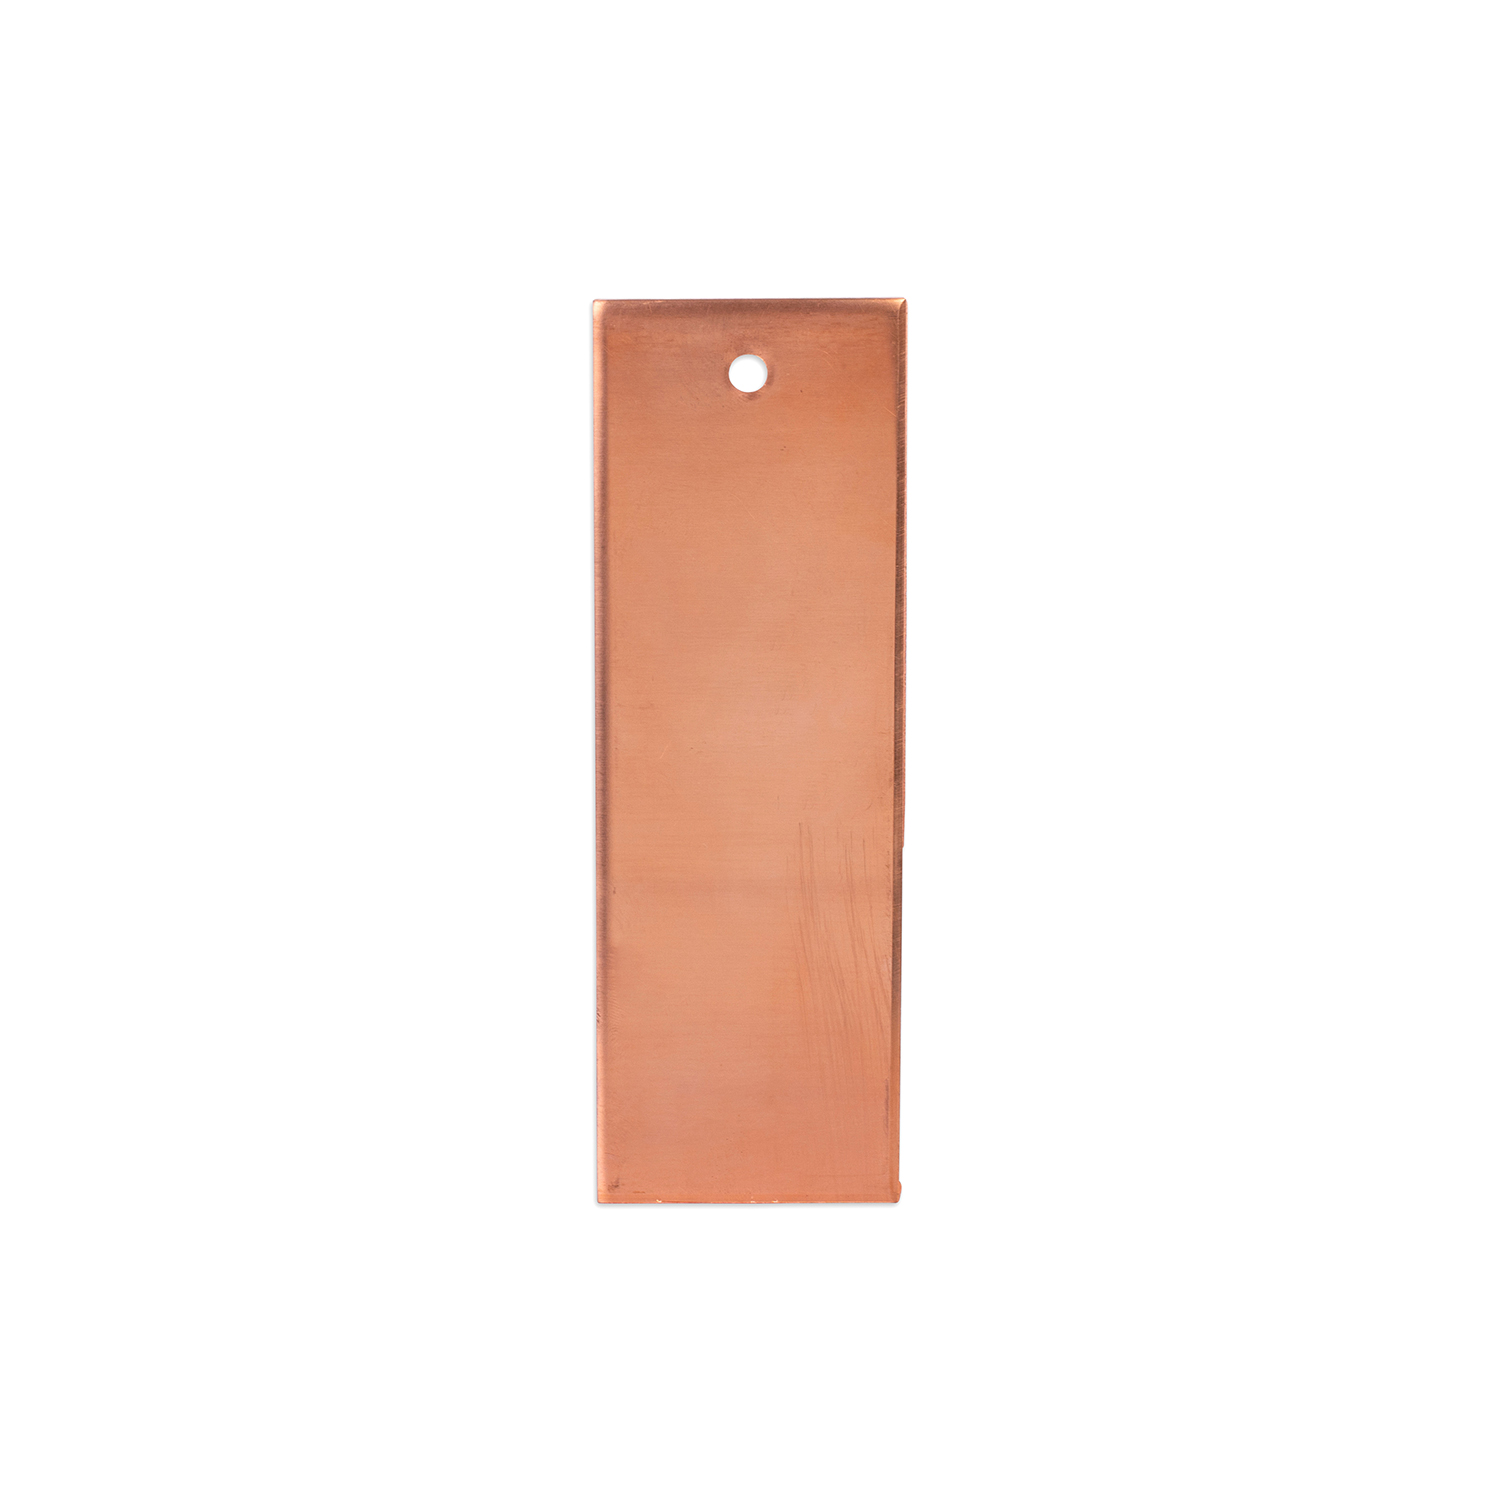 Copper anode 150x50x3 mm